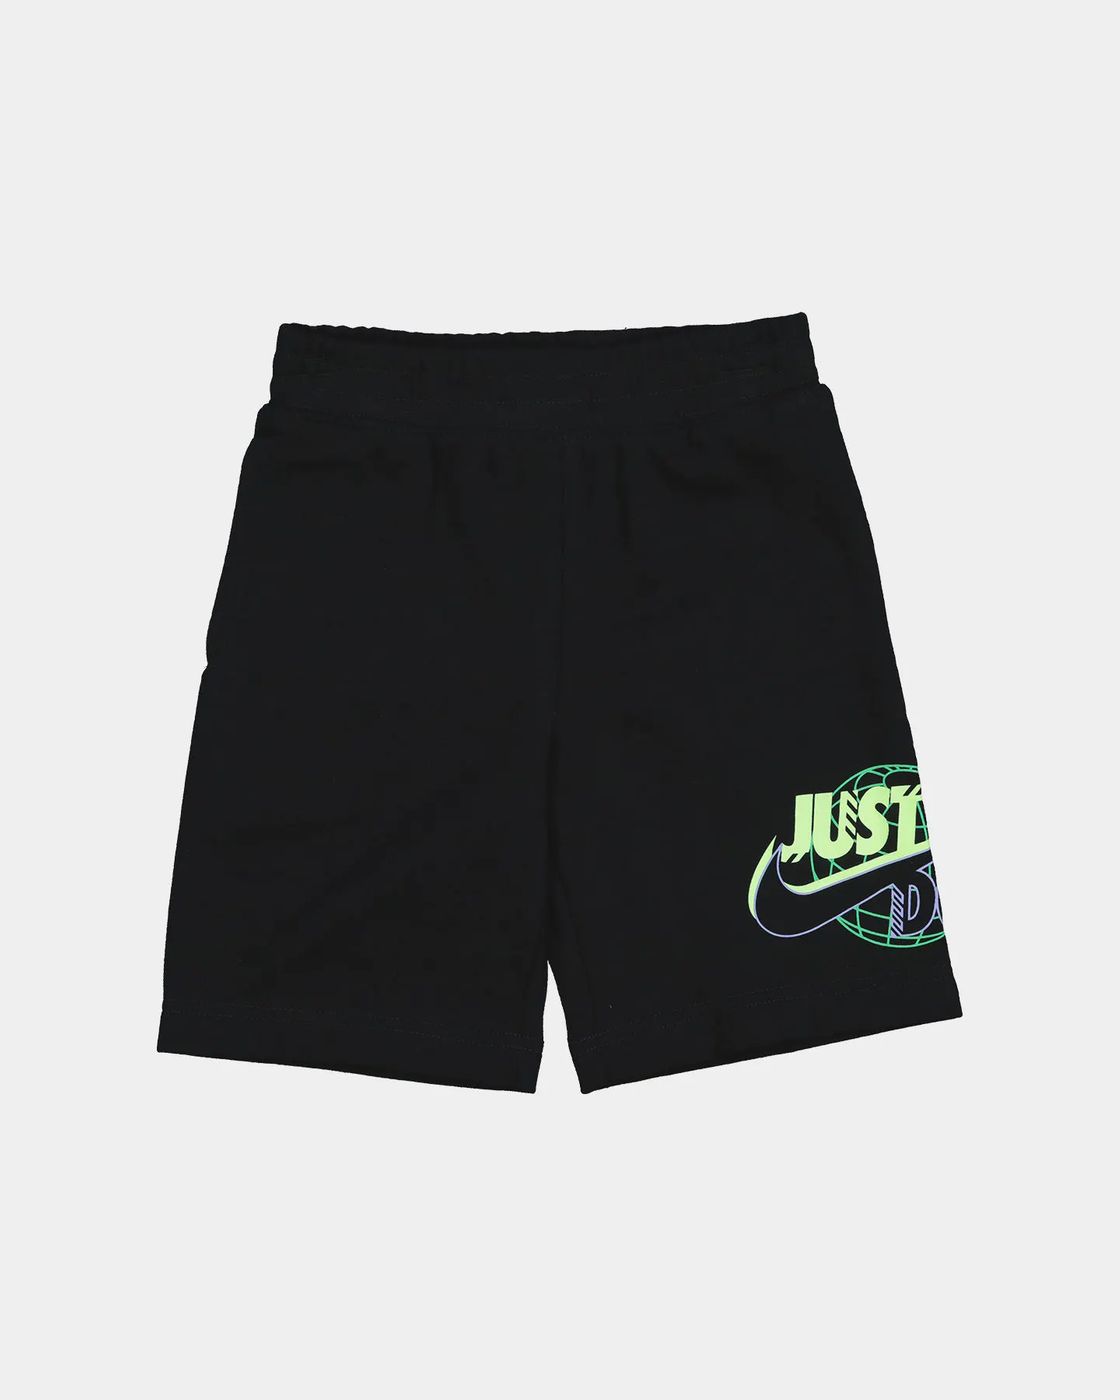 86J822-023 - Shorts - Nike